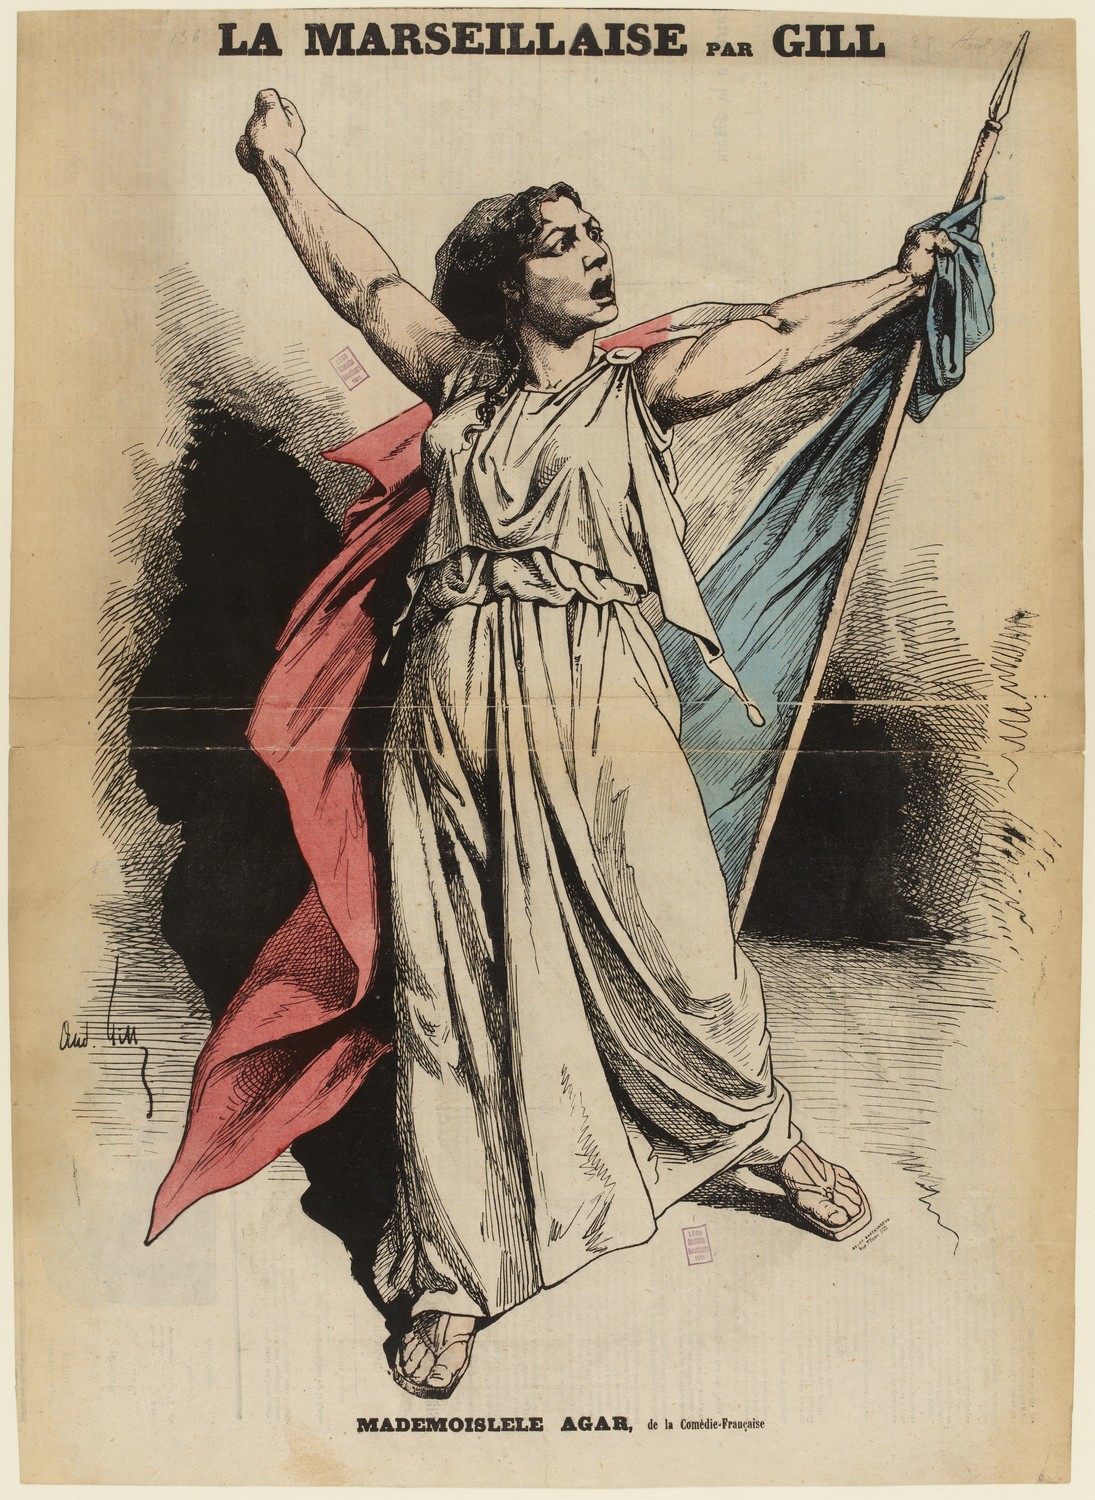 La Marseillaise par Gill - Mademoiselle Agar, de la Comédie-Française. (CC0 Paris Musées / Musée Carnavalet - Histoire de Paris)